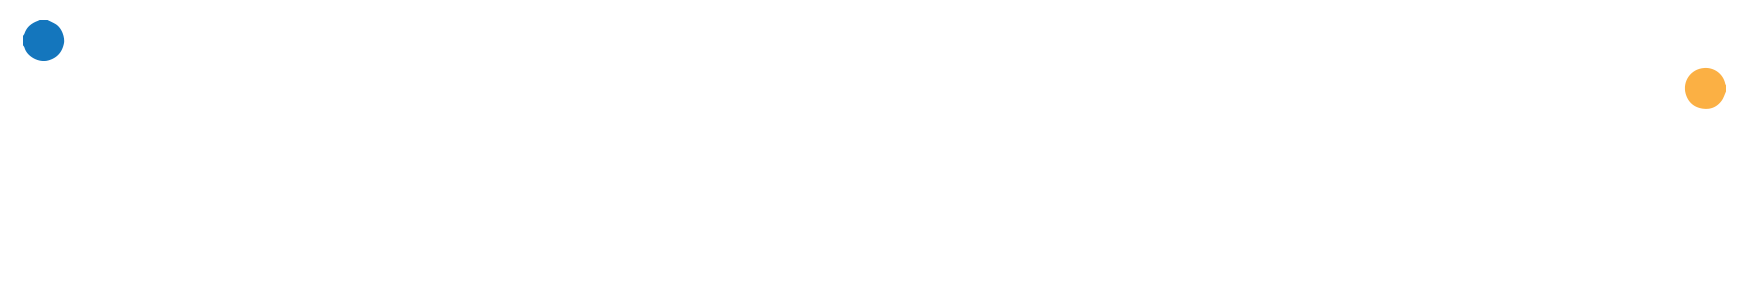 Full logo, white lettering